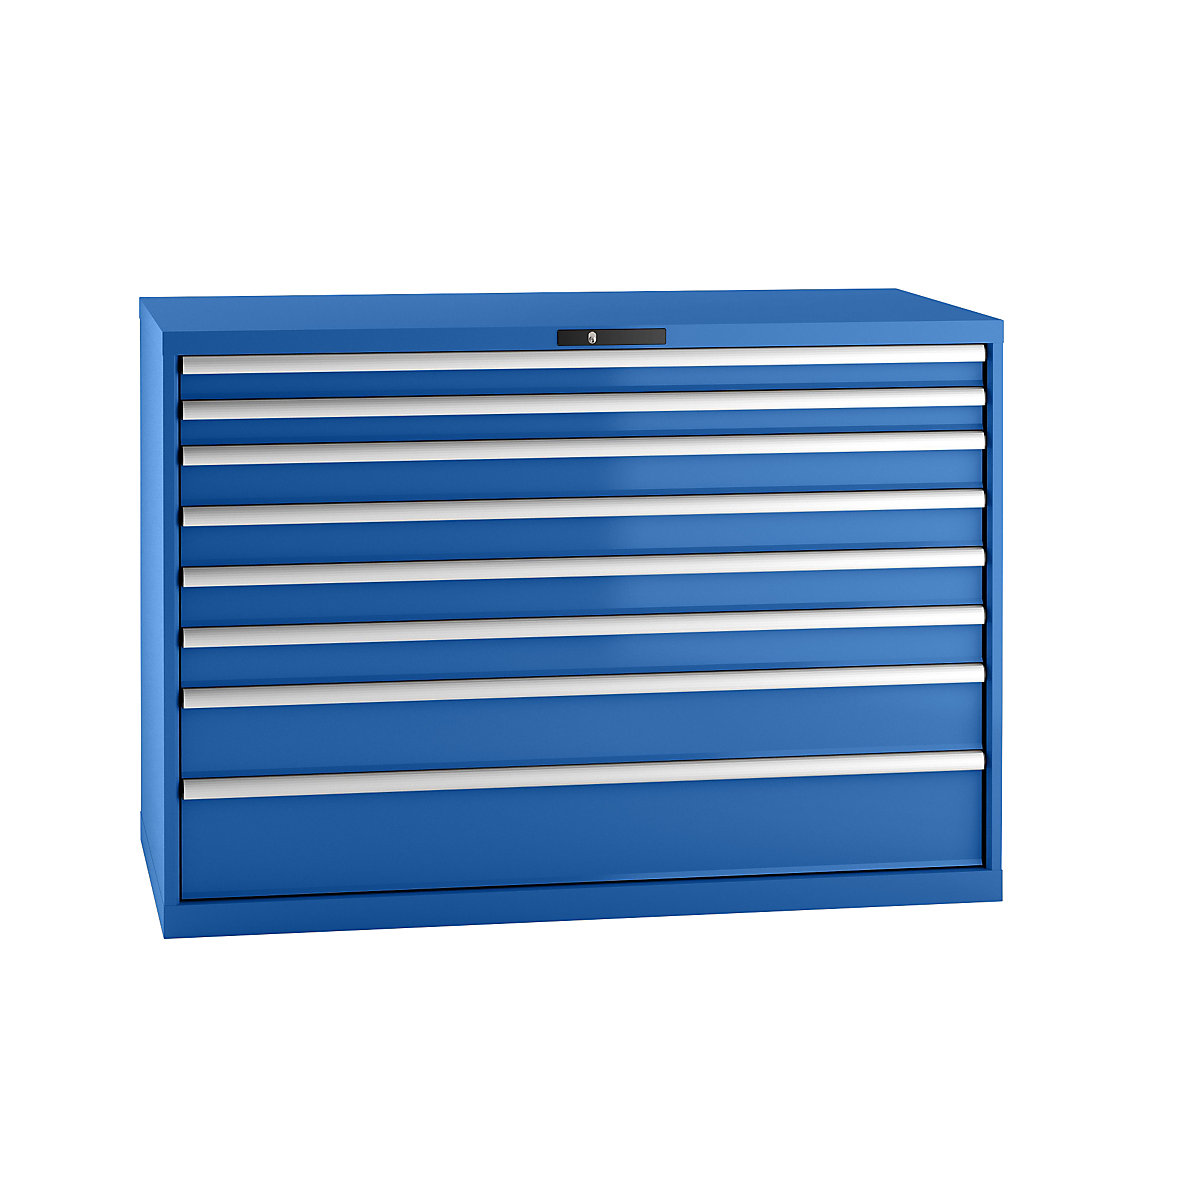 Szafa z szufladami, blacha stalowa – LISTA, wys.x szer. 1000 x 1431 mm, 8 szuflad, nośność 75 kg, niebieski gencjanowy-6